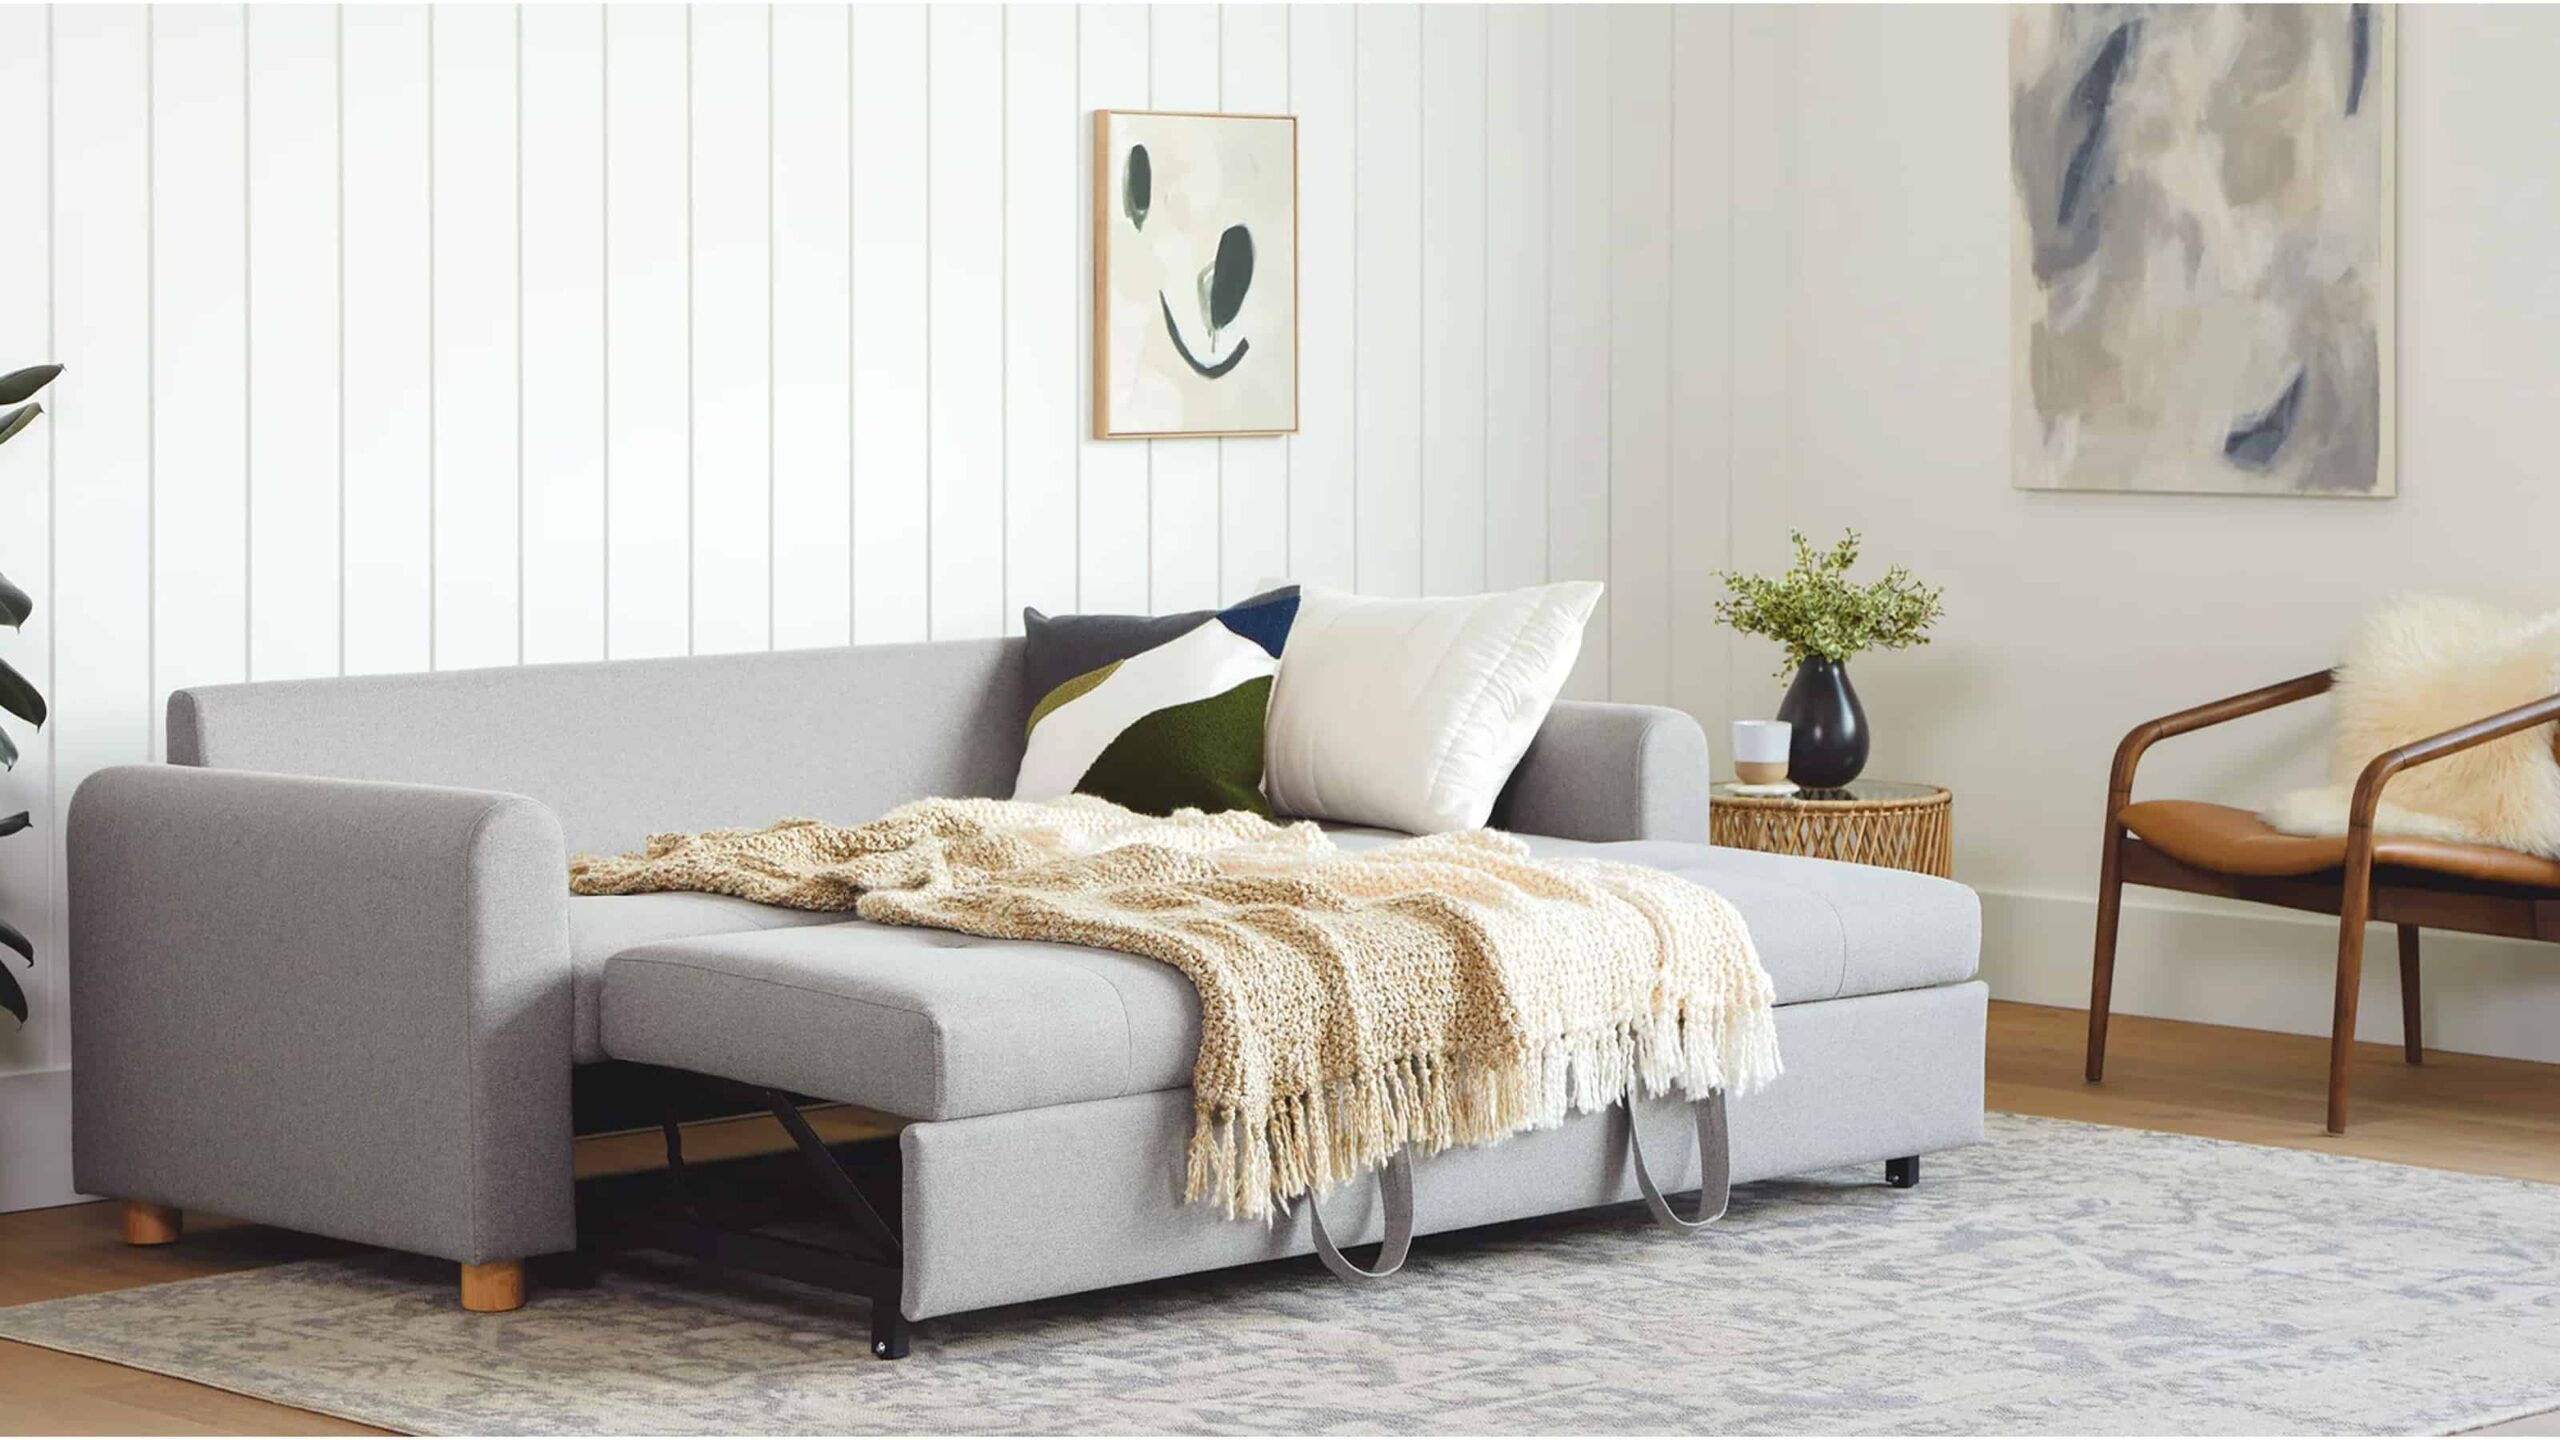 Buy sofa cum beds online with exclusive deals & discounts!